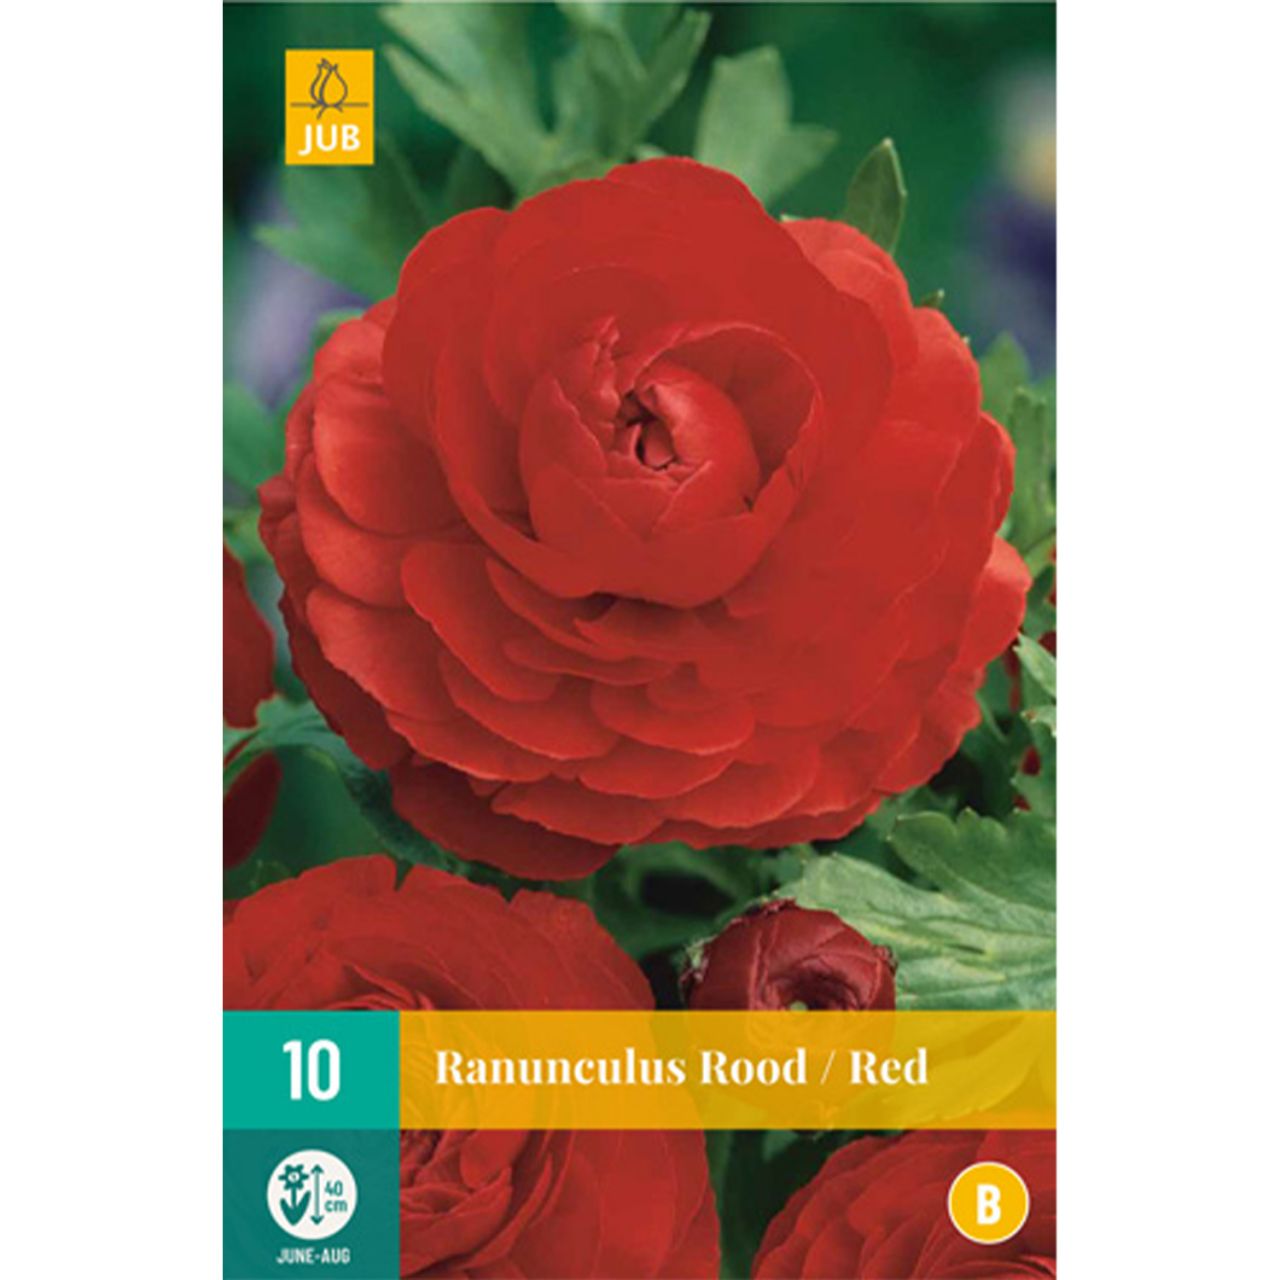 Kategorie <b>Frühlings-Blumenzwiebeln </b> - Ranunkeln 'Red' - 10 Stück - Ranunculus 'Red'